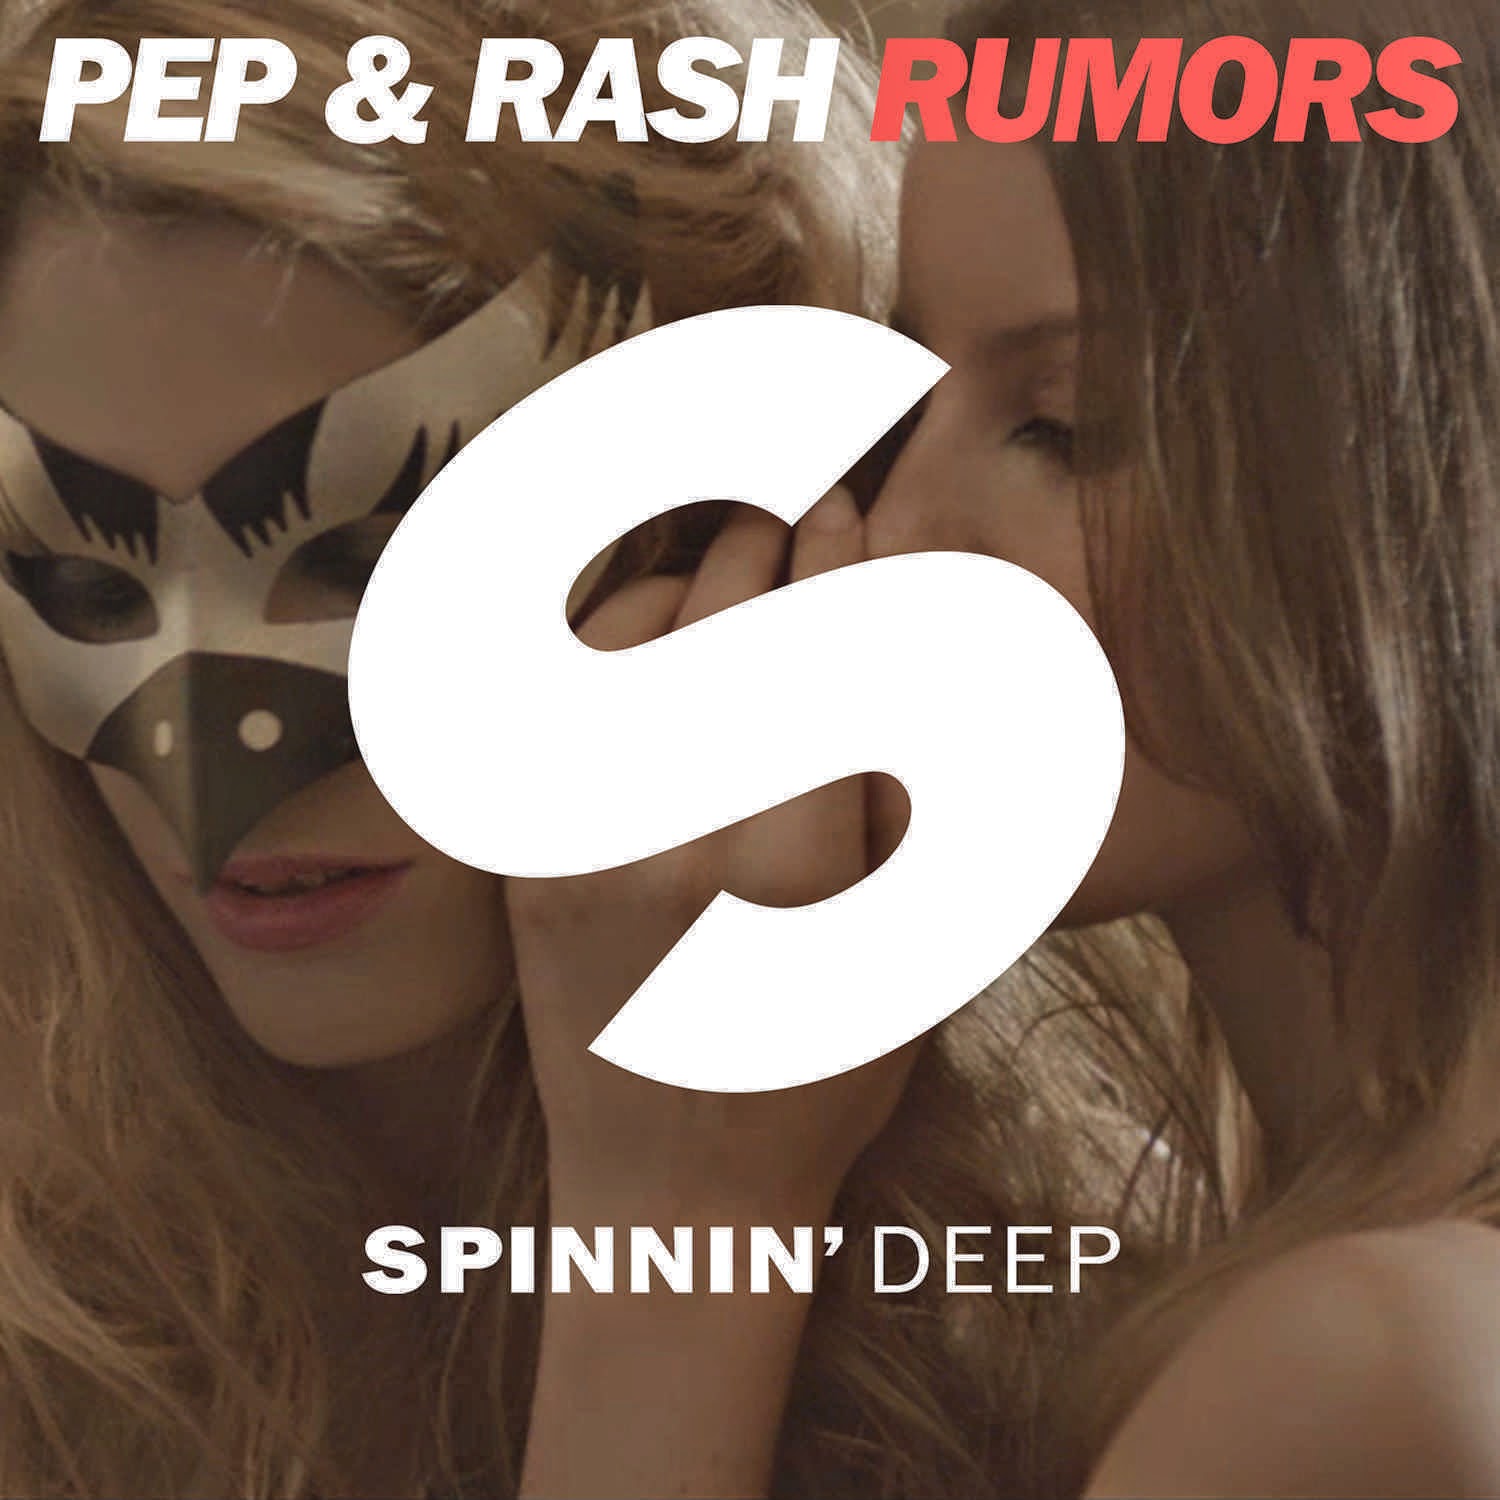  Rumors Pep & Rash